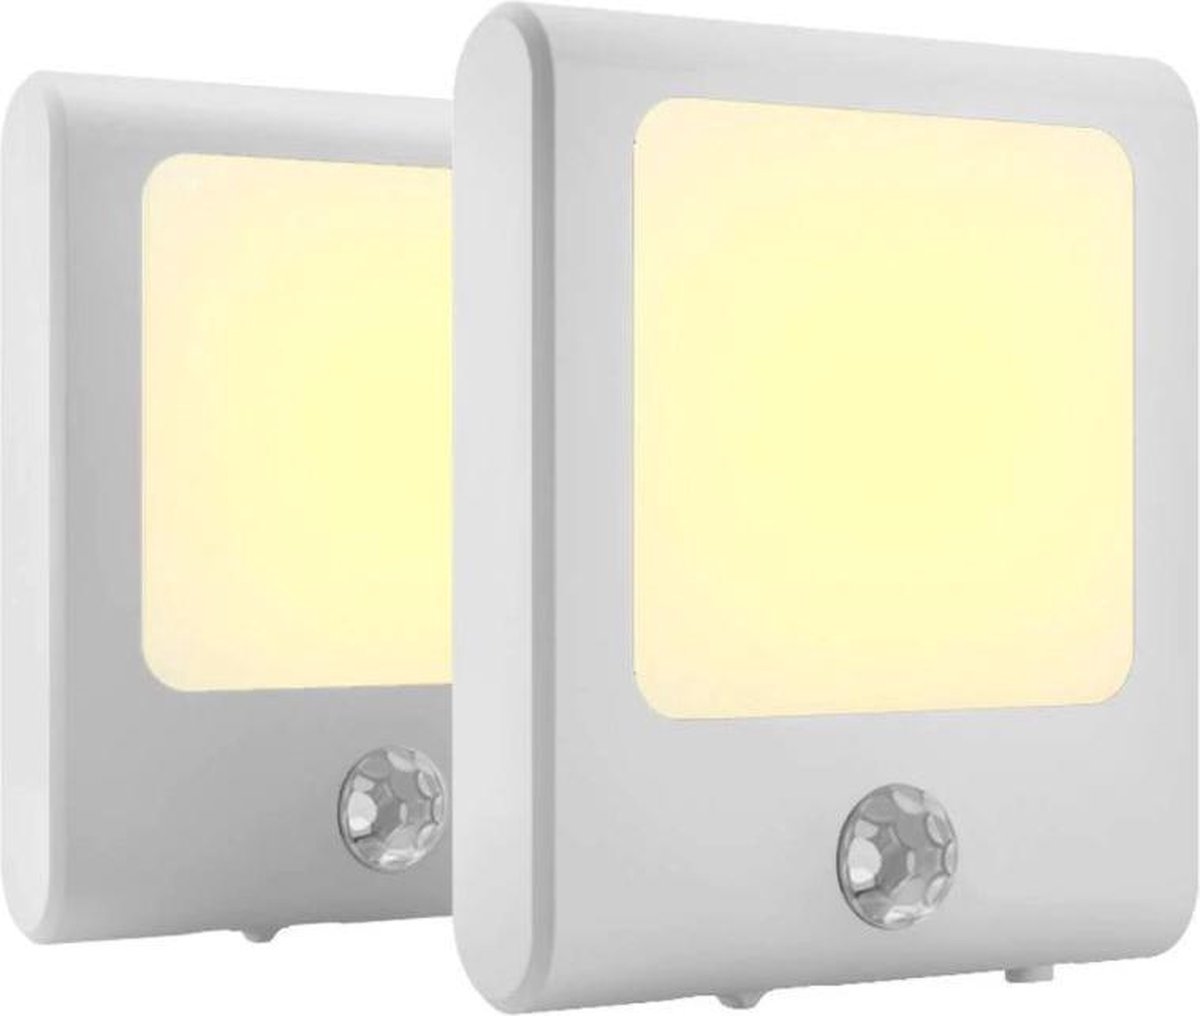 2 x stopcontact lampje met bewegingssensor – plugin ledlamp – Nachtlampje -  warm licht – dimbaar - Merkloos